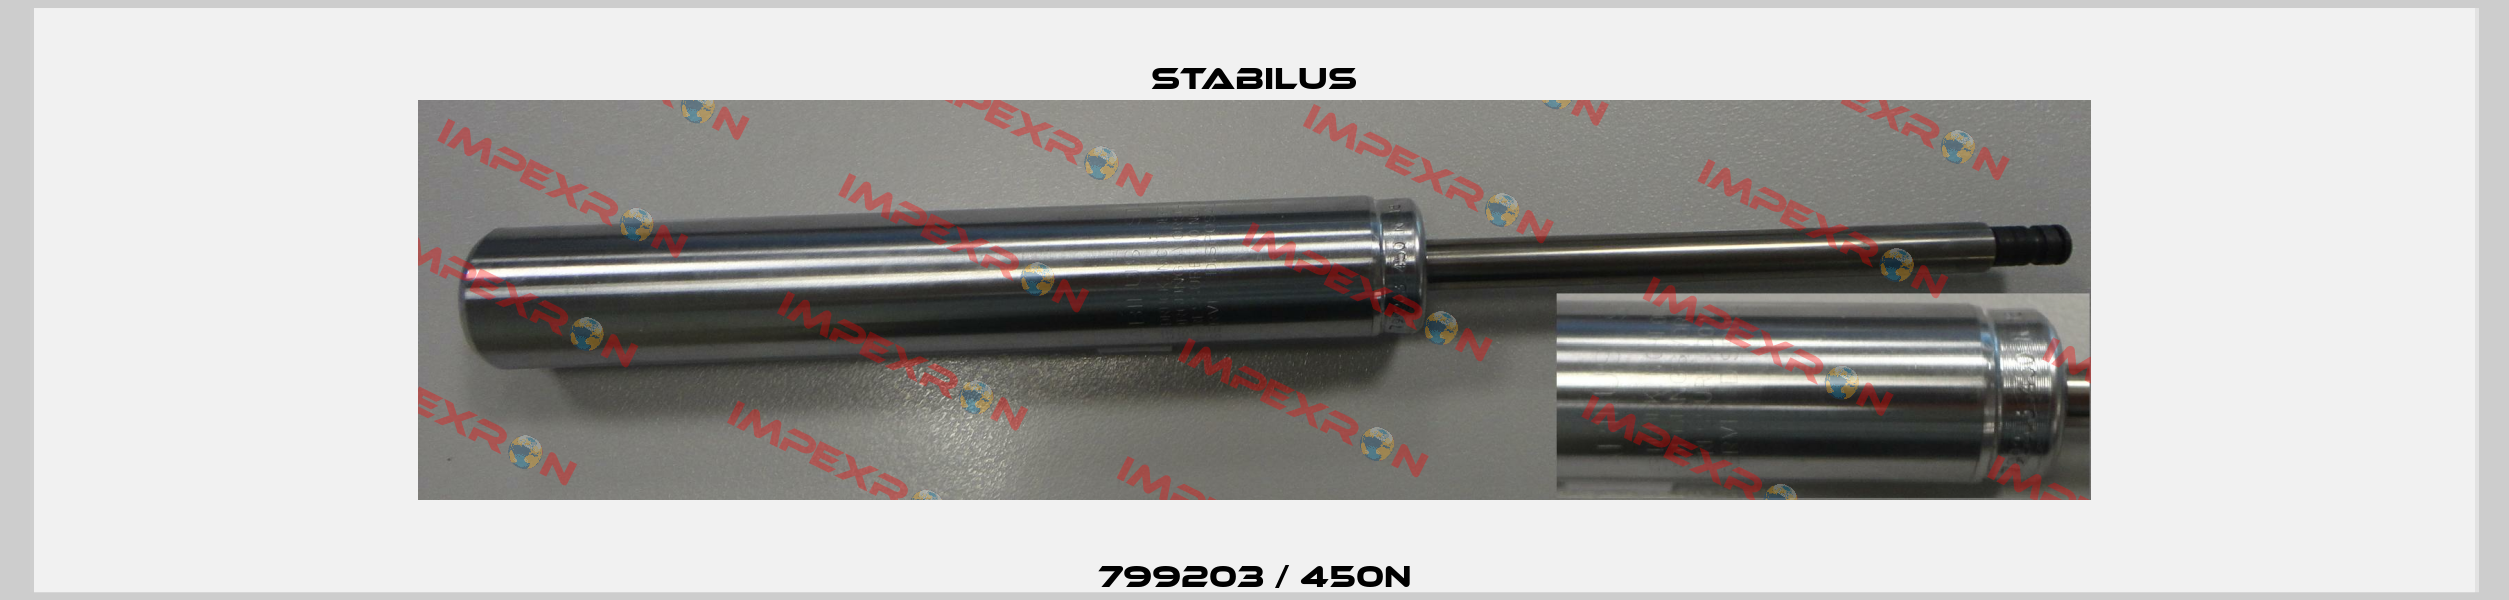 799203 / 450N Stabilus